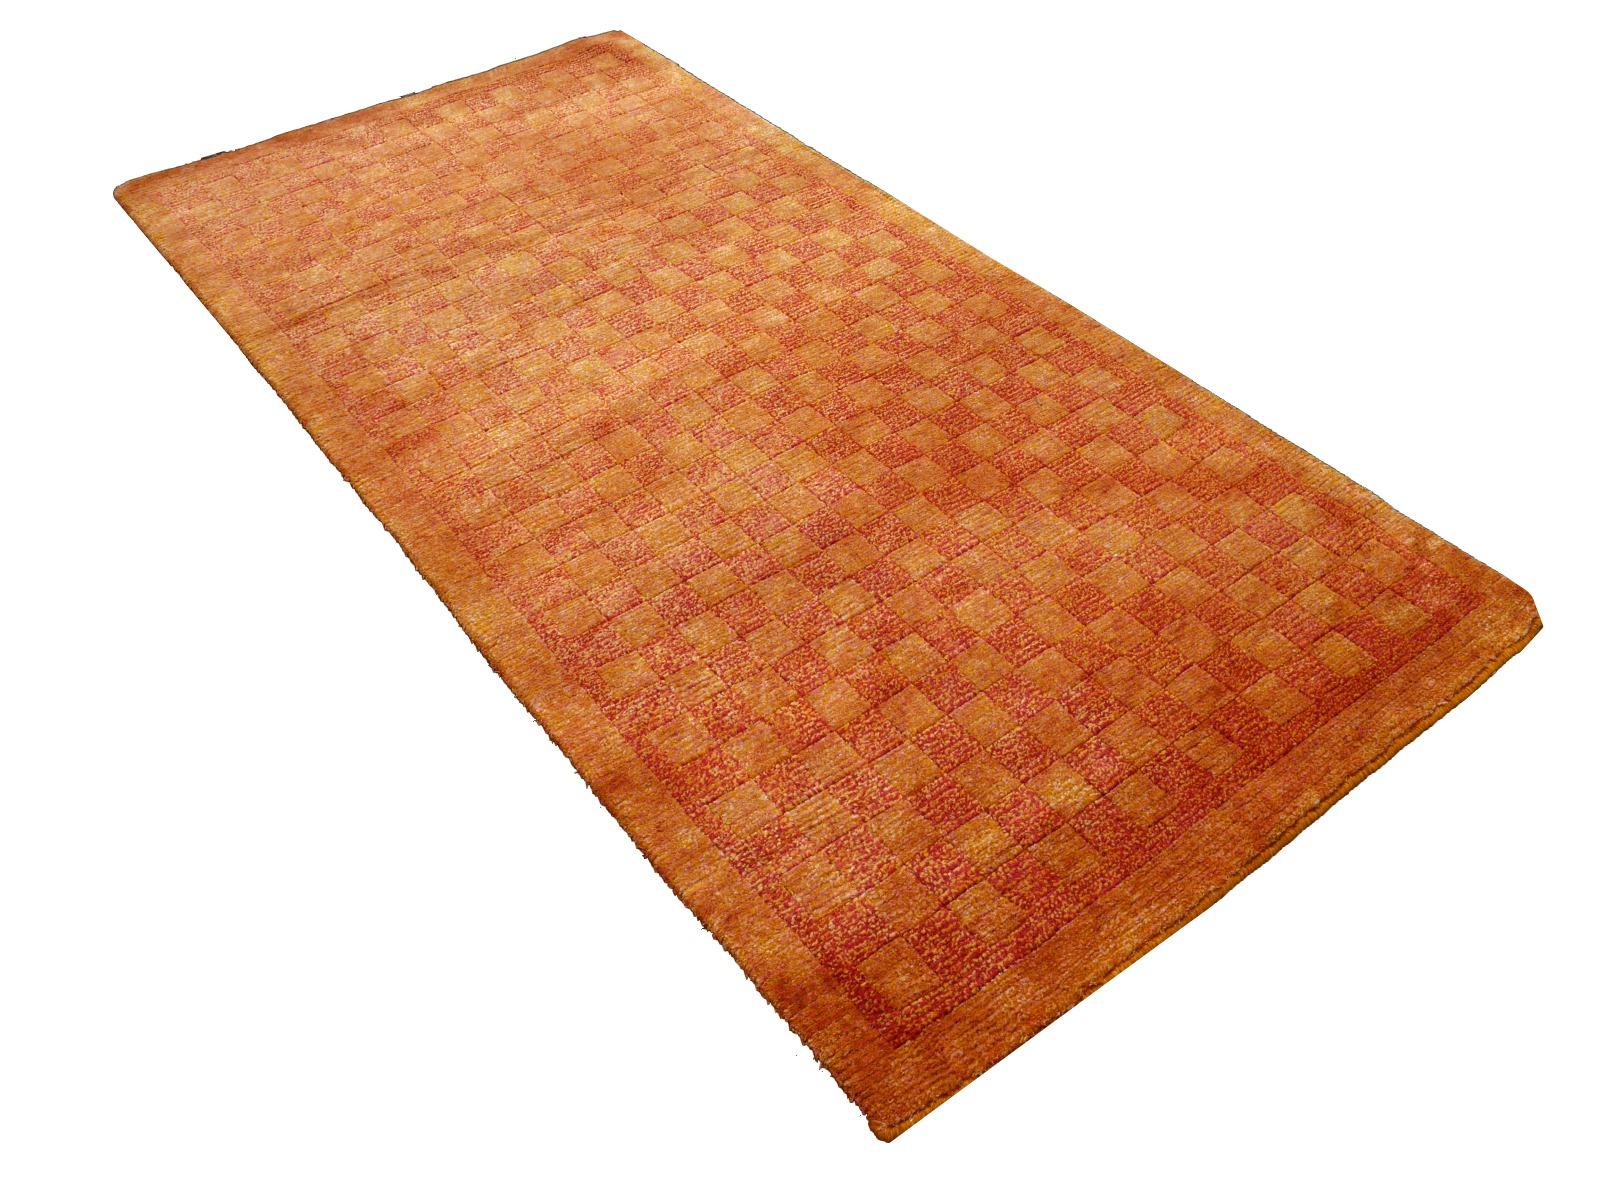 Un étonnant tapis tibétain en forme de damier.
Ce motif traditionnel de tapis en damier se trouve généralement sur des tapis anciens appelés Khaden. Il s'agit d'un tapis de petite taille, d'environ 3 x 6 pieds, qui était utilisé au Tibet pour